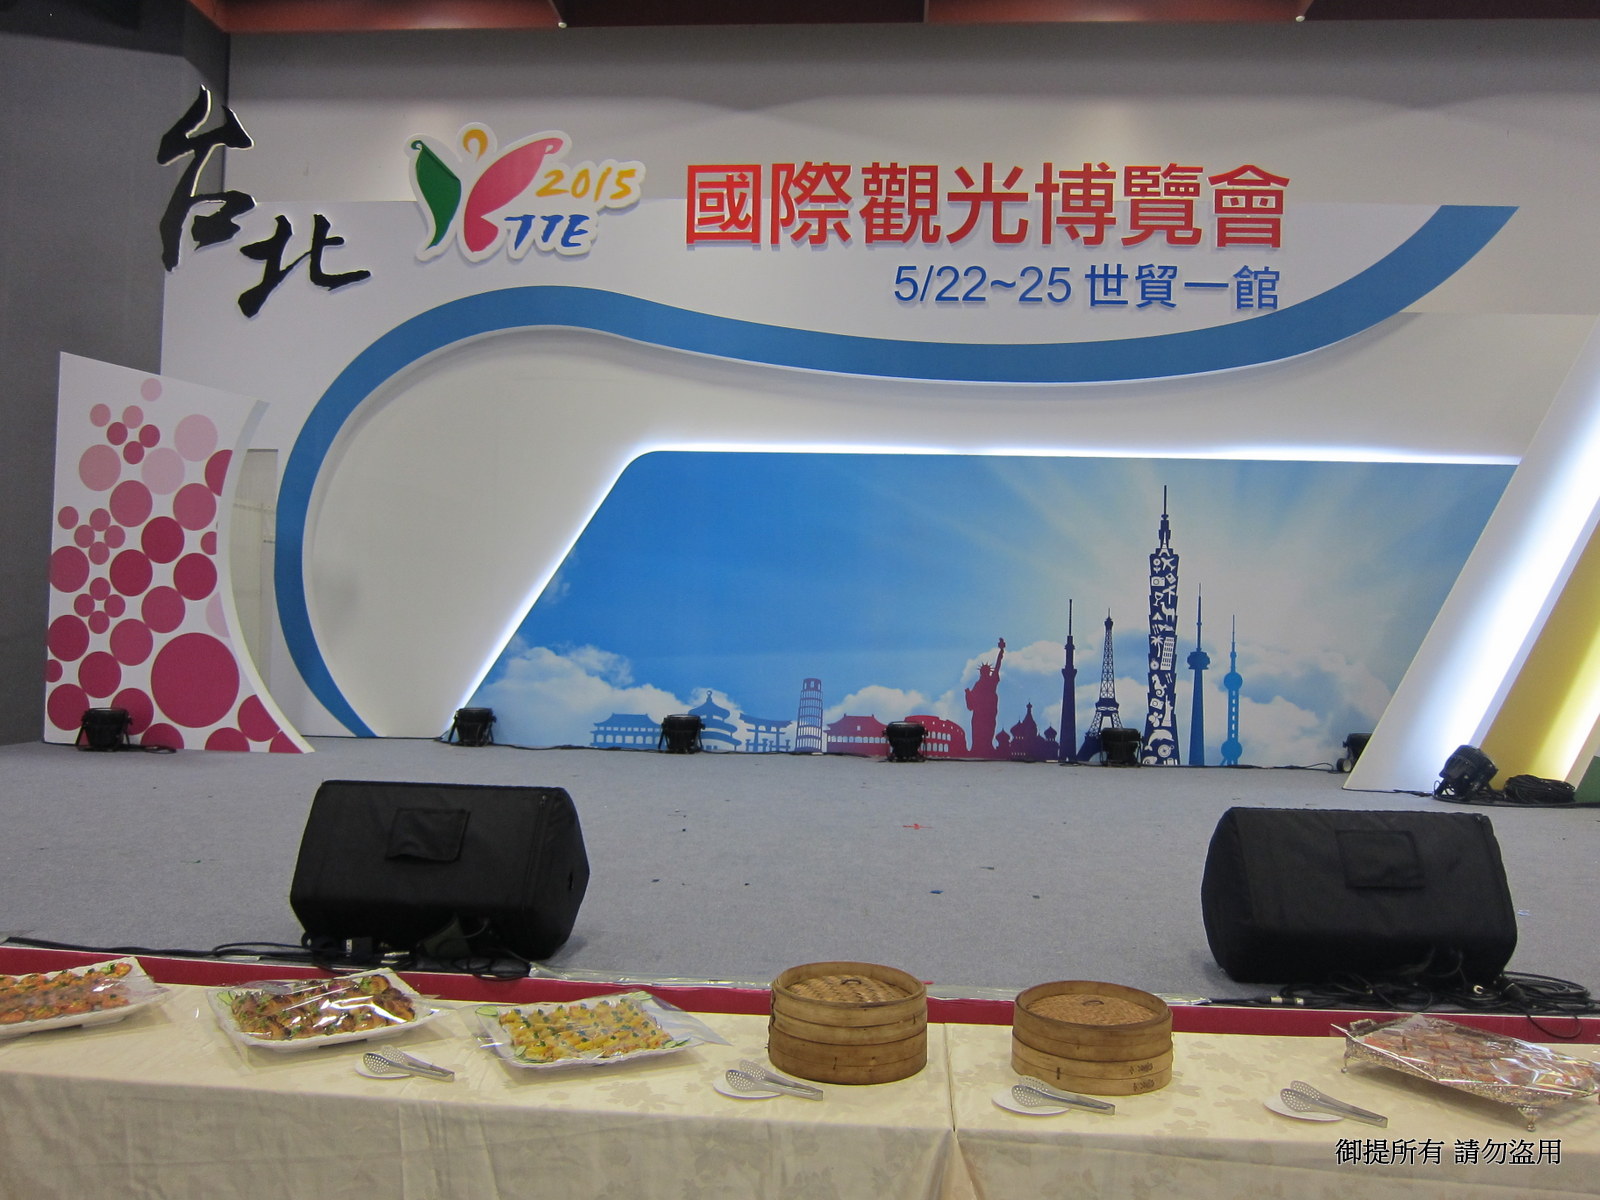 2015年05月24日台北國際觀光博覽會